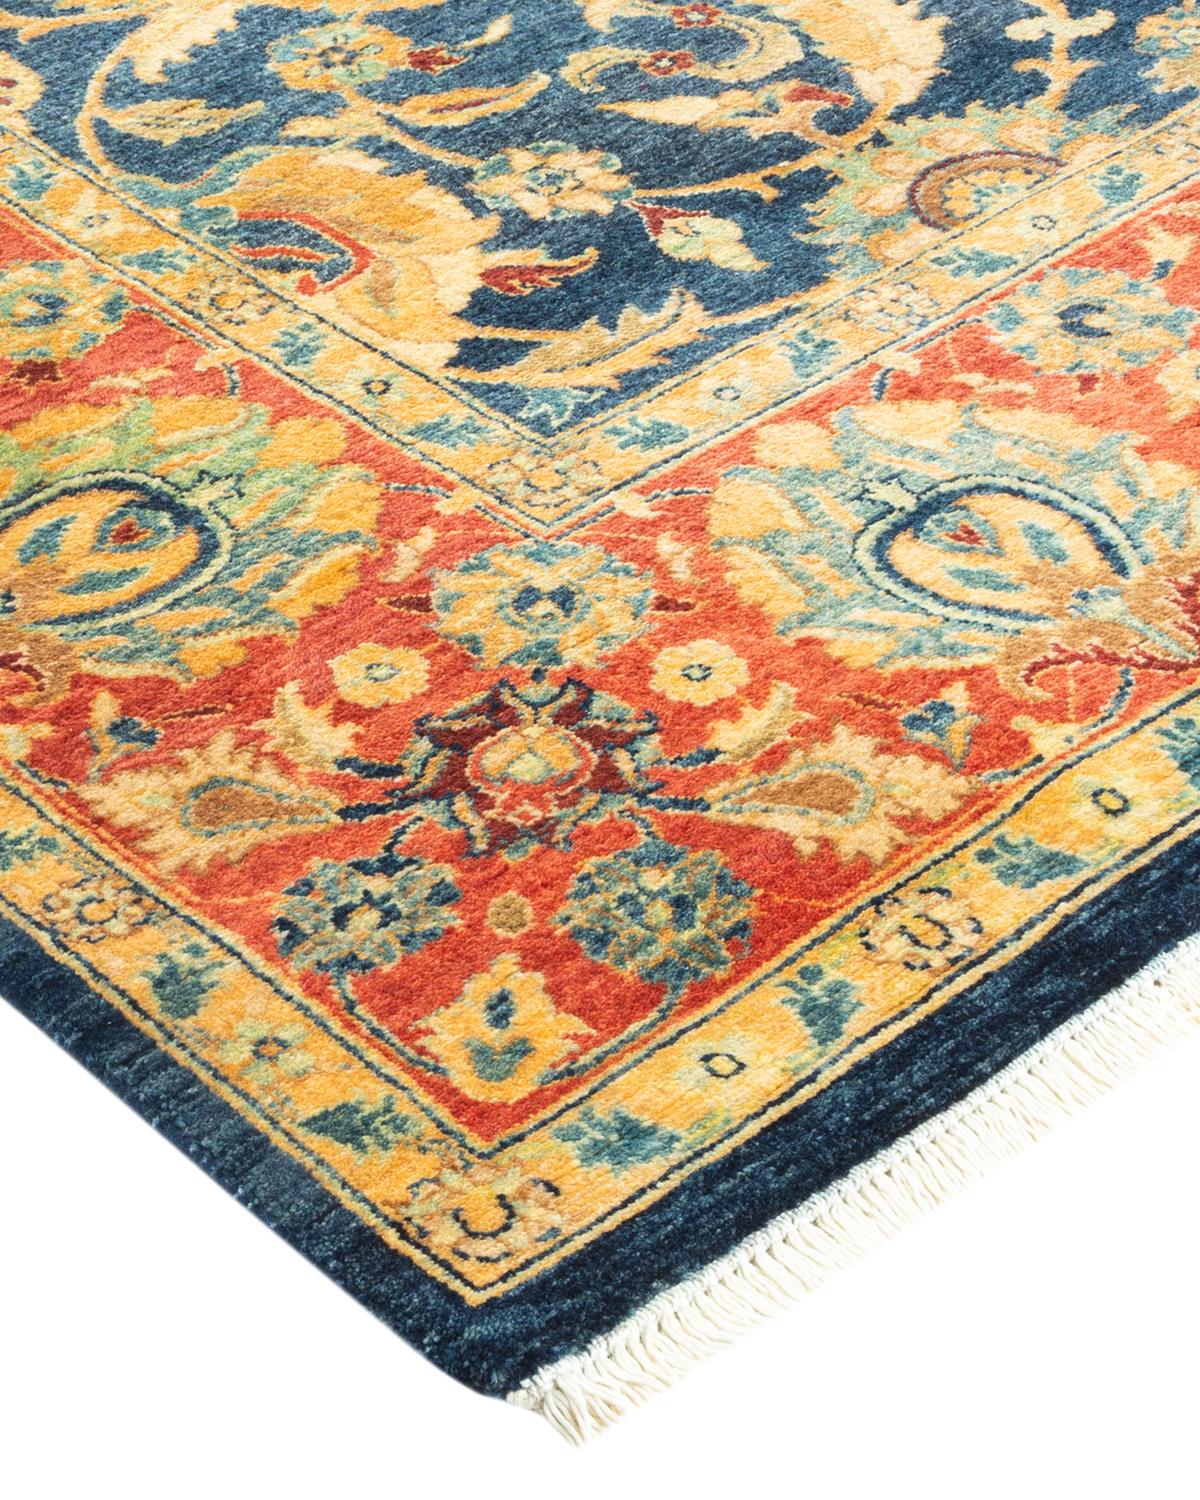 Die Teppiche der Mogul Collection'S bringen mit ihren zurückhaltenden Farben und Allover-Mustern zeitlose Raffinesse in jeden Raum. Beeinflusst von einem Spektrum türkischer, indischer und persischer Designs, lassen die Kunsthandwerker, die diese